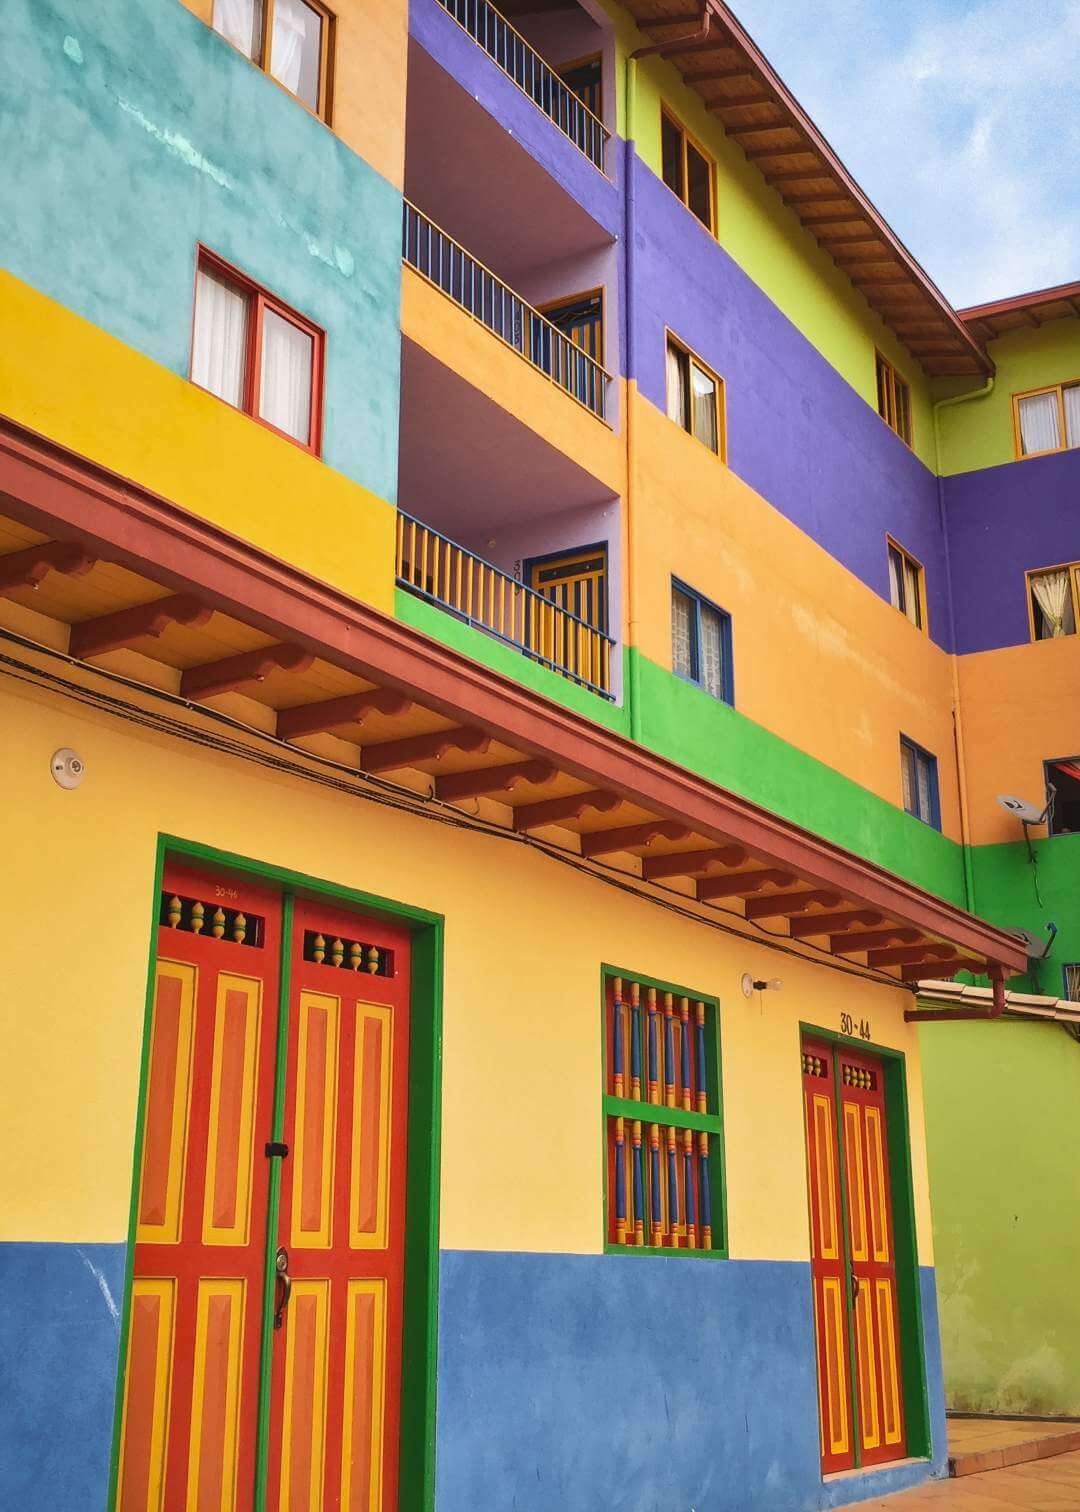 Hoteles en Guatapé Colombia